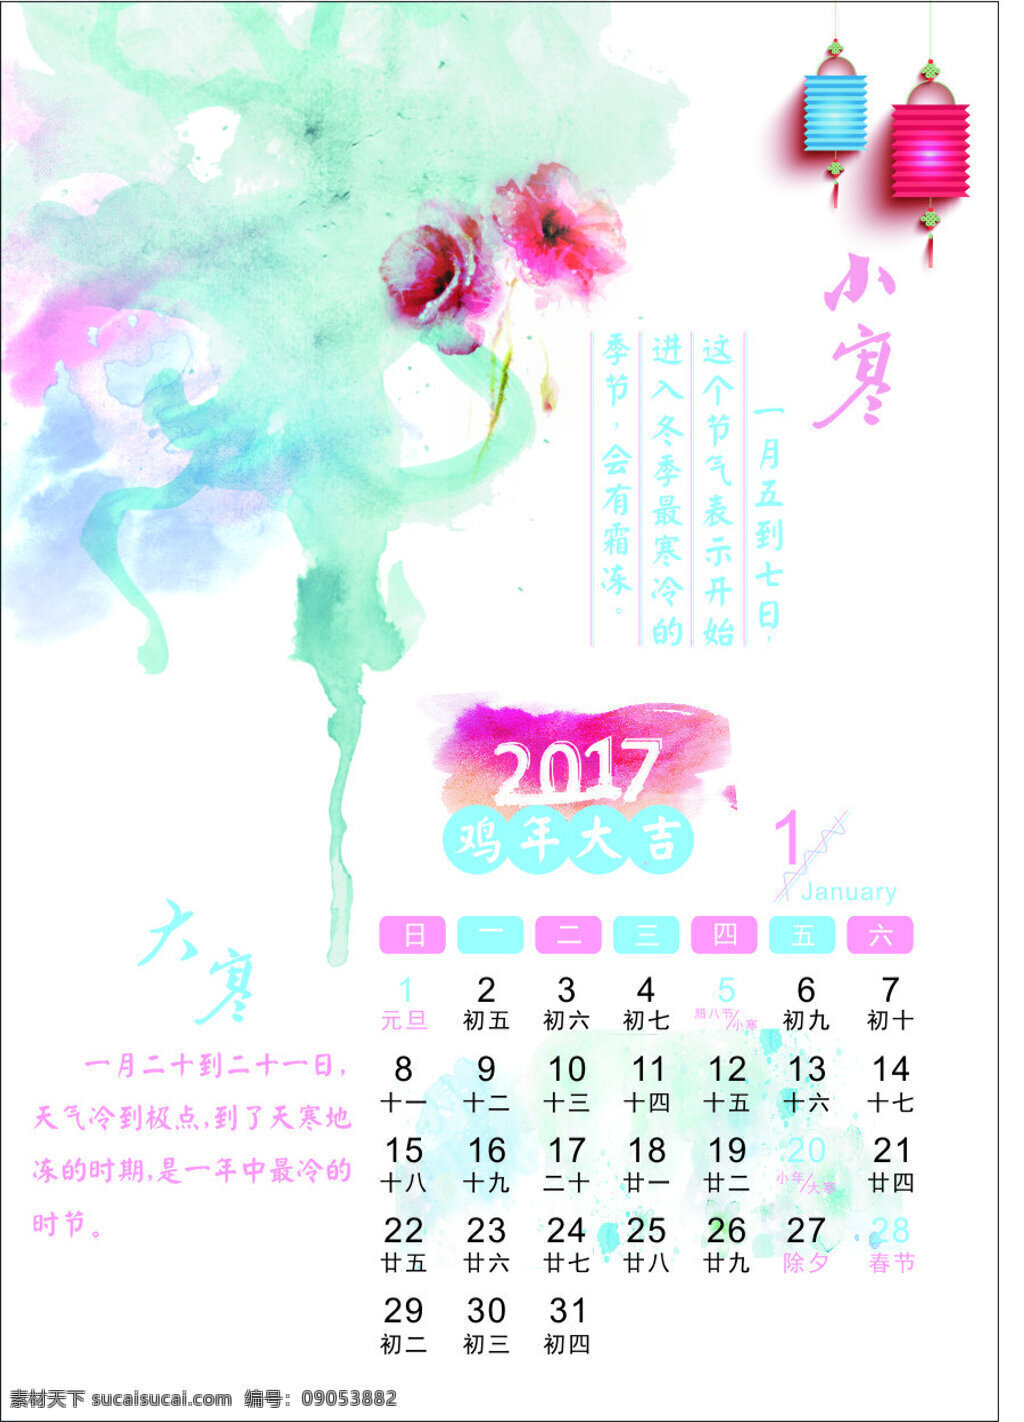 2017 年 艺术 创意 日历 月 艺术日历 1月 一月 简易 2017日历 简易日历 简洁日历模板 矢量 日期时间 日历表格